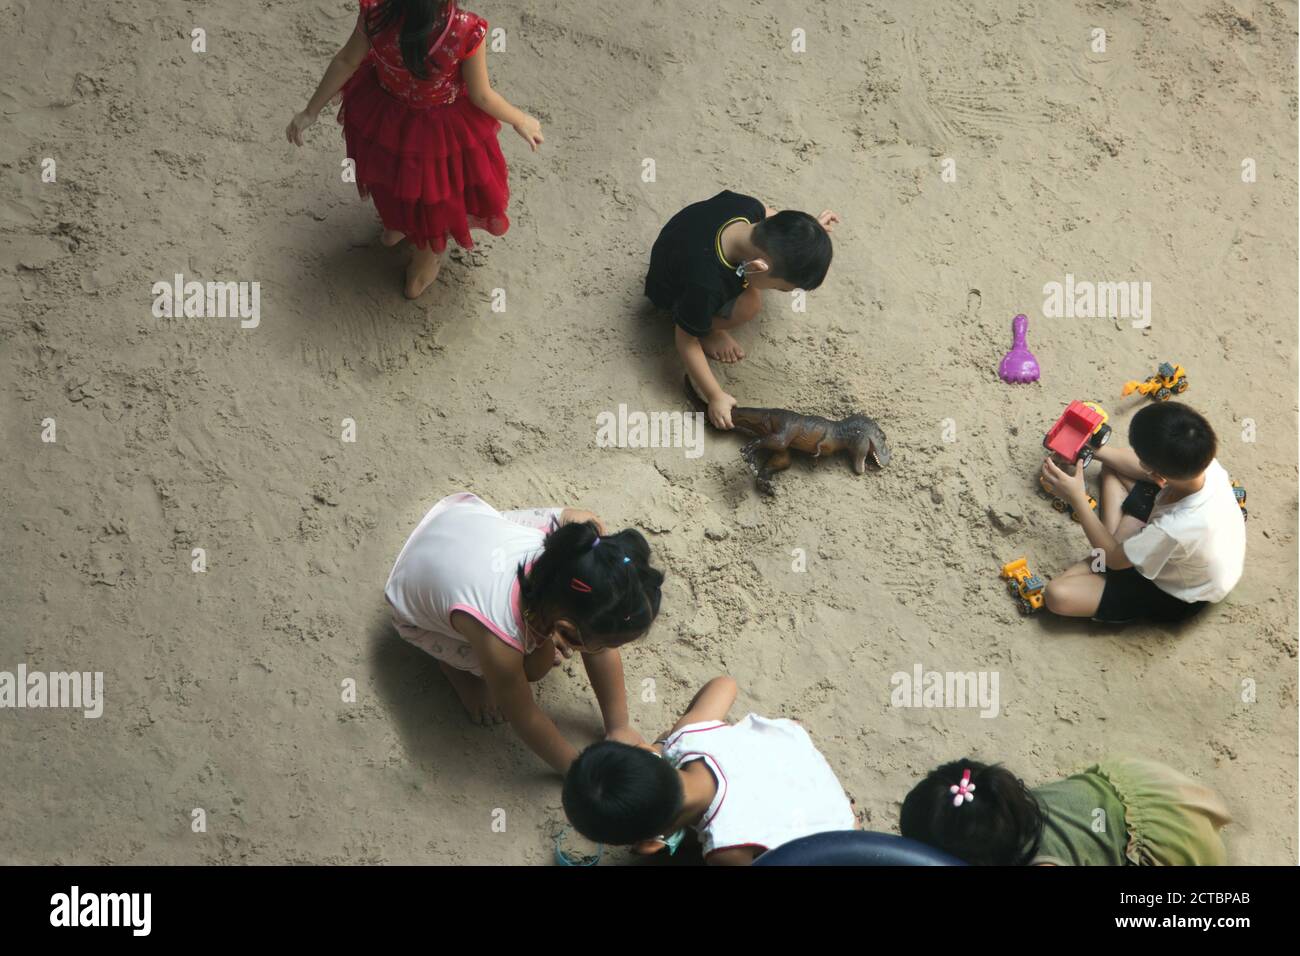 les enfants aiment toujours jouer au sable avec le jouet dans les activités de plein air et utiliser le masque en situation de pandémie. Banque D'Images